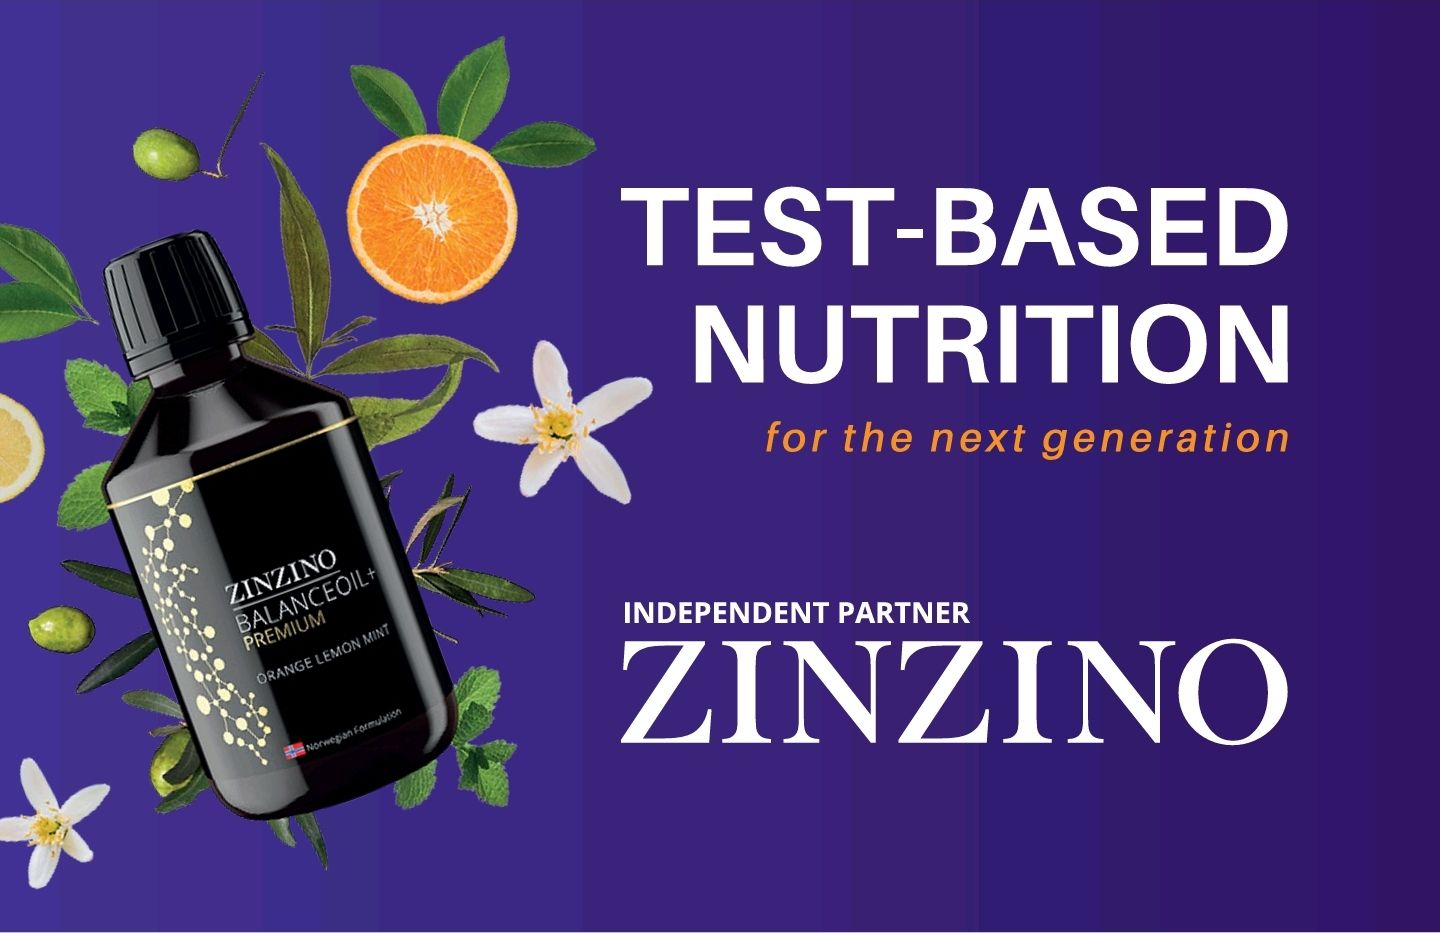 Zinzino - Independent Partner